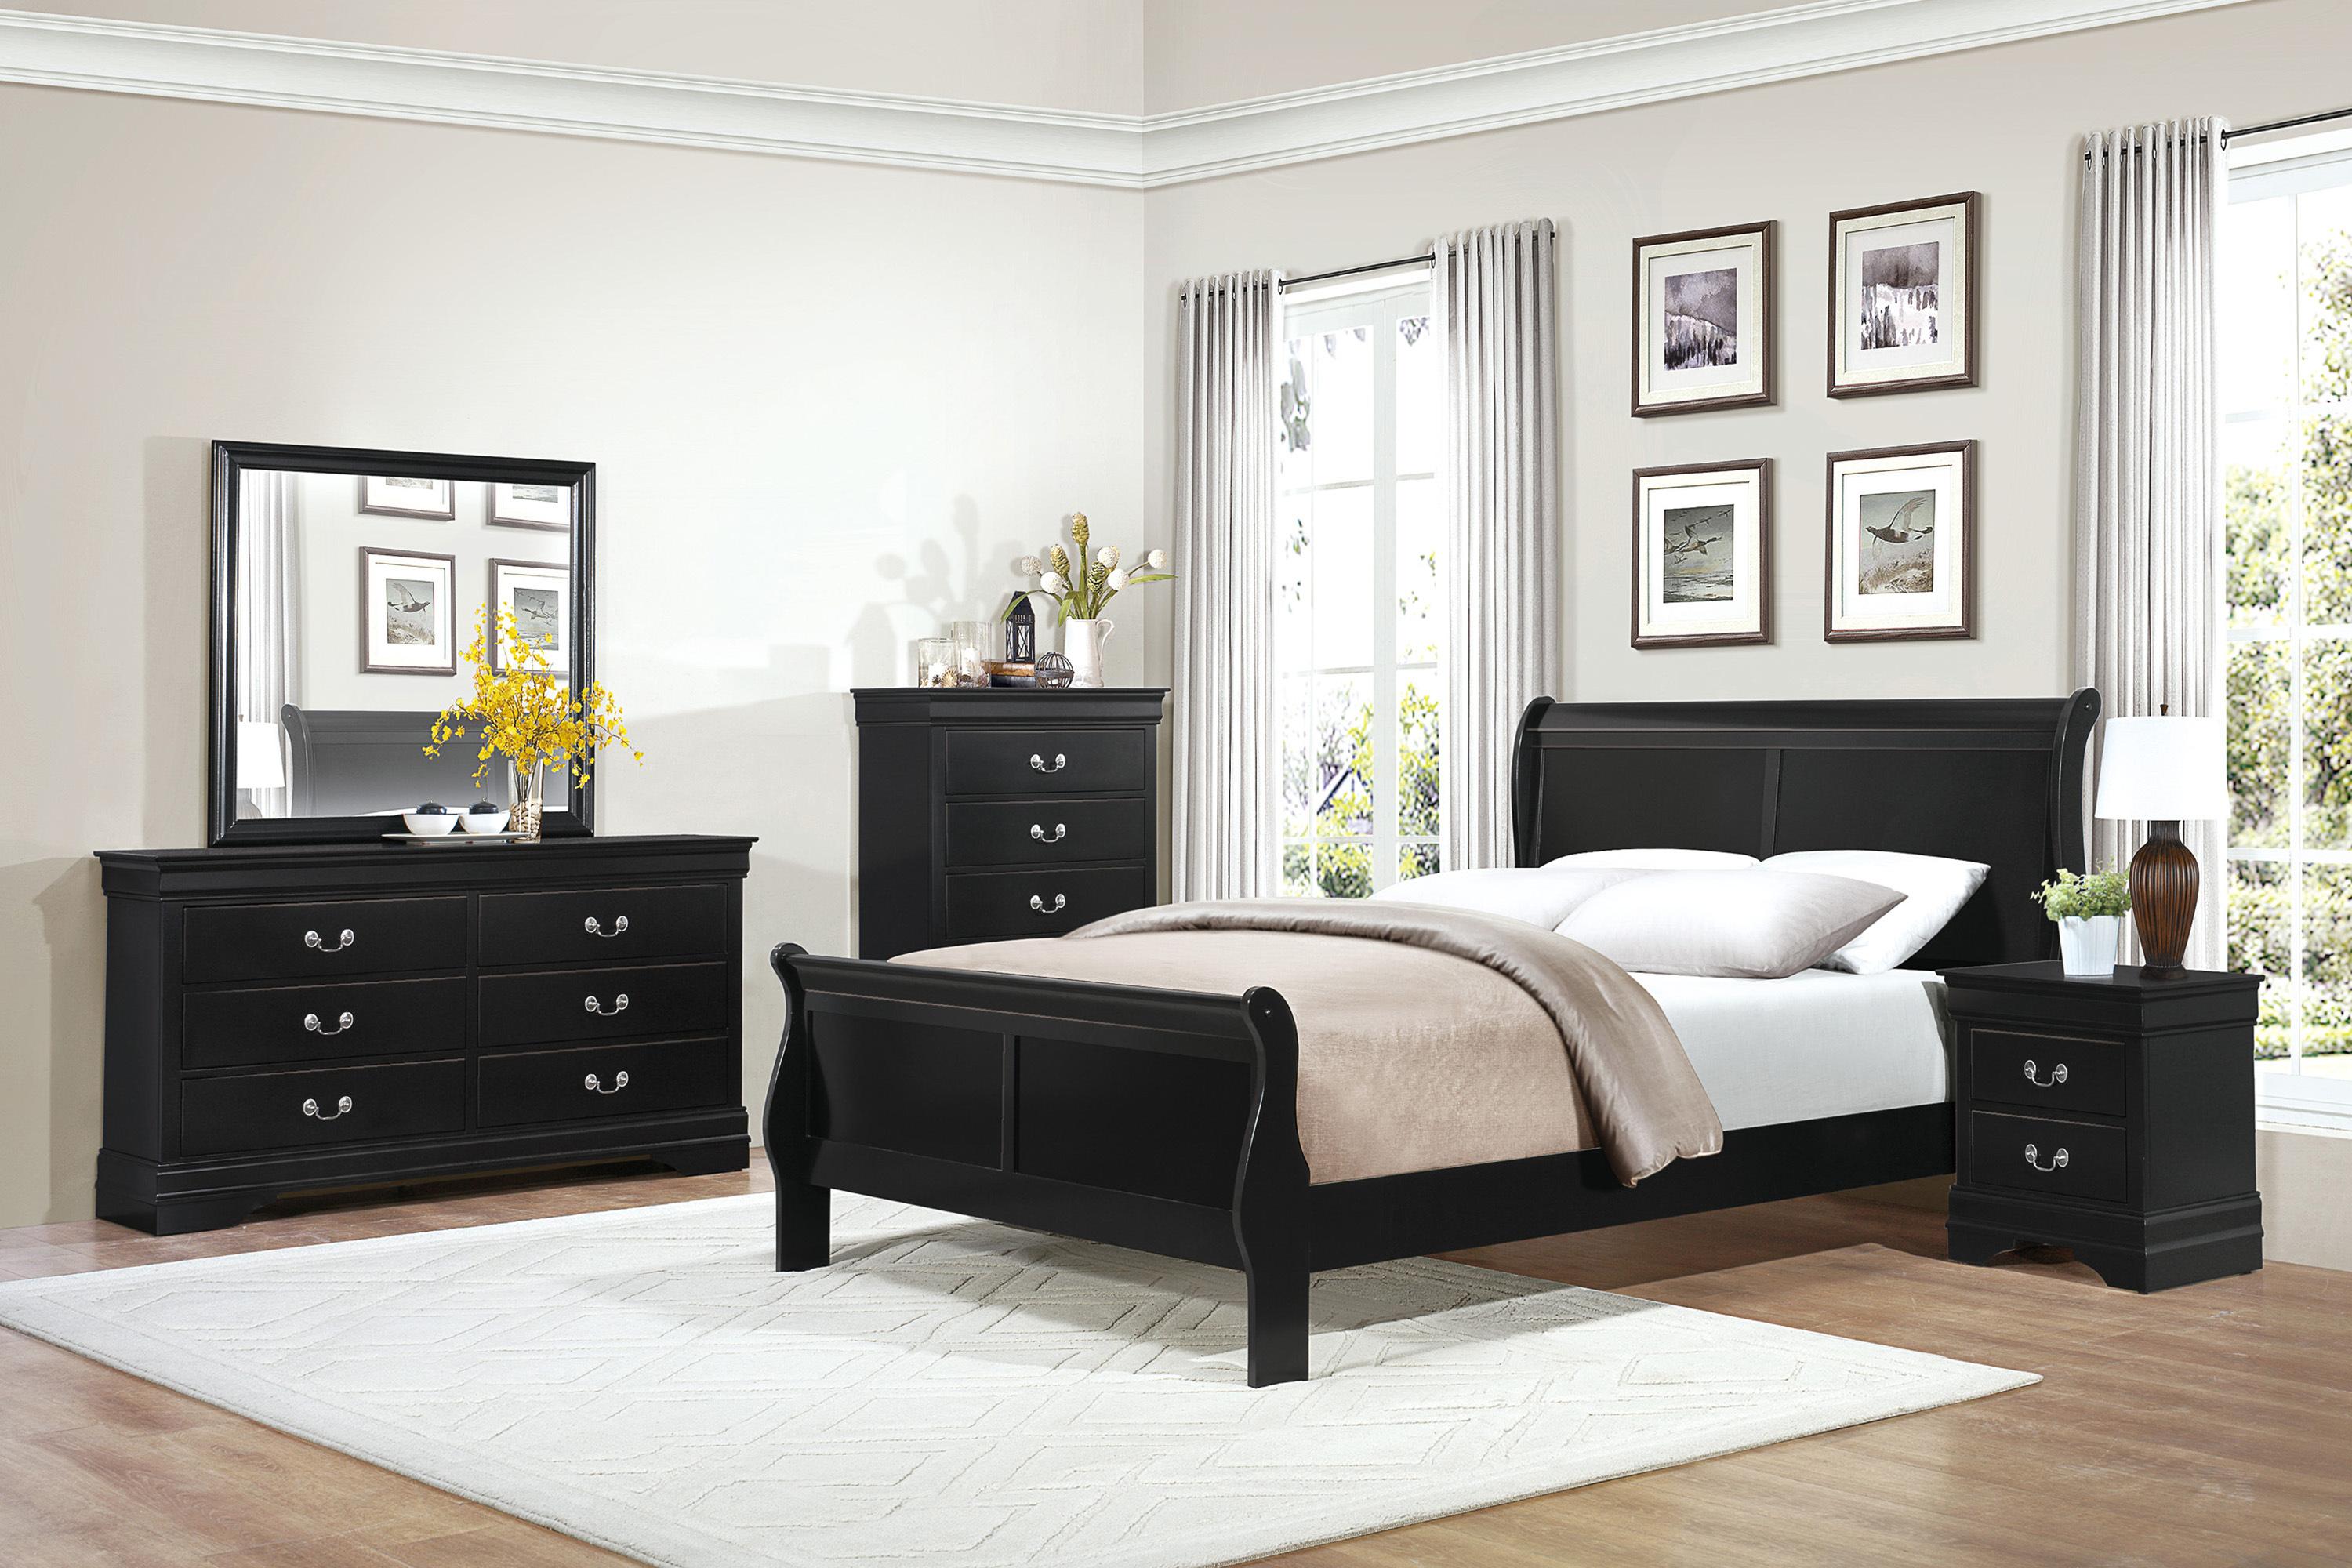 

    
Traditional Black Wood King Bedroom Set 5pcs Homelegance 2147KBK-1EK* Mayville
